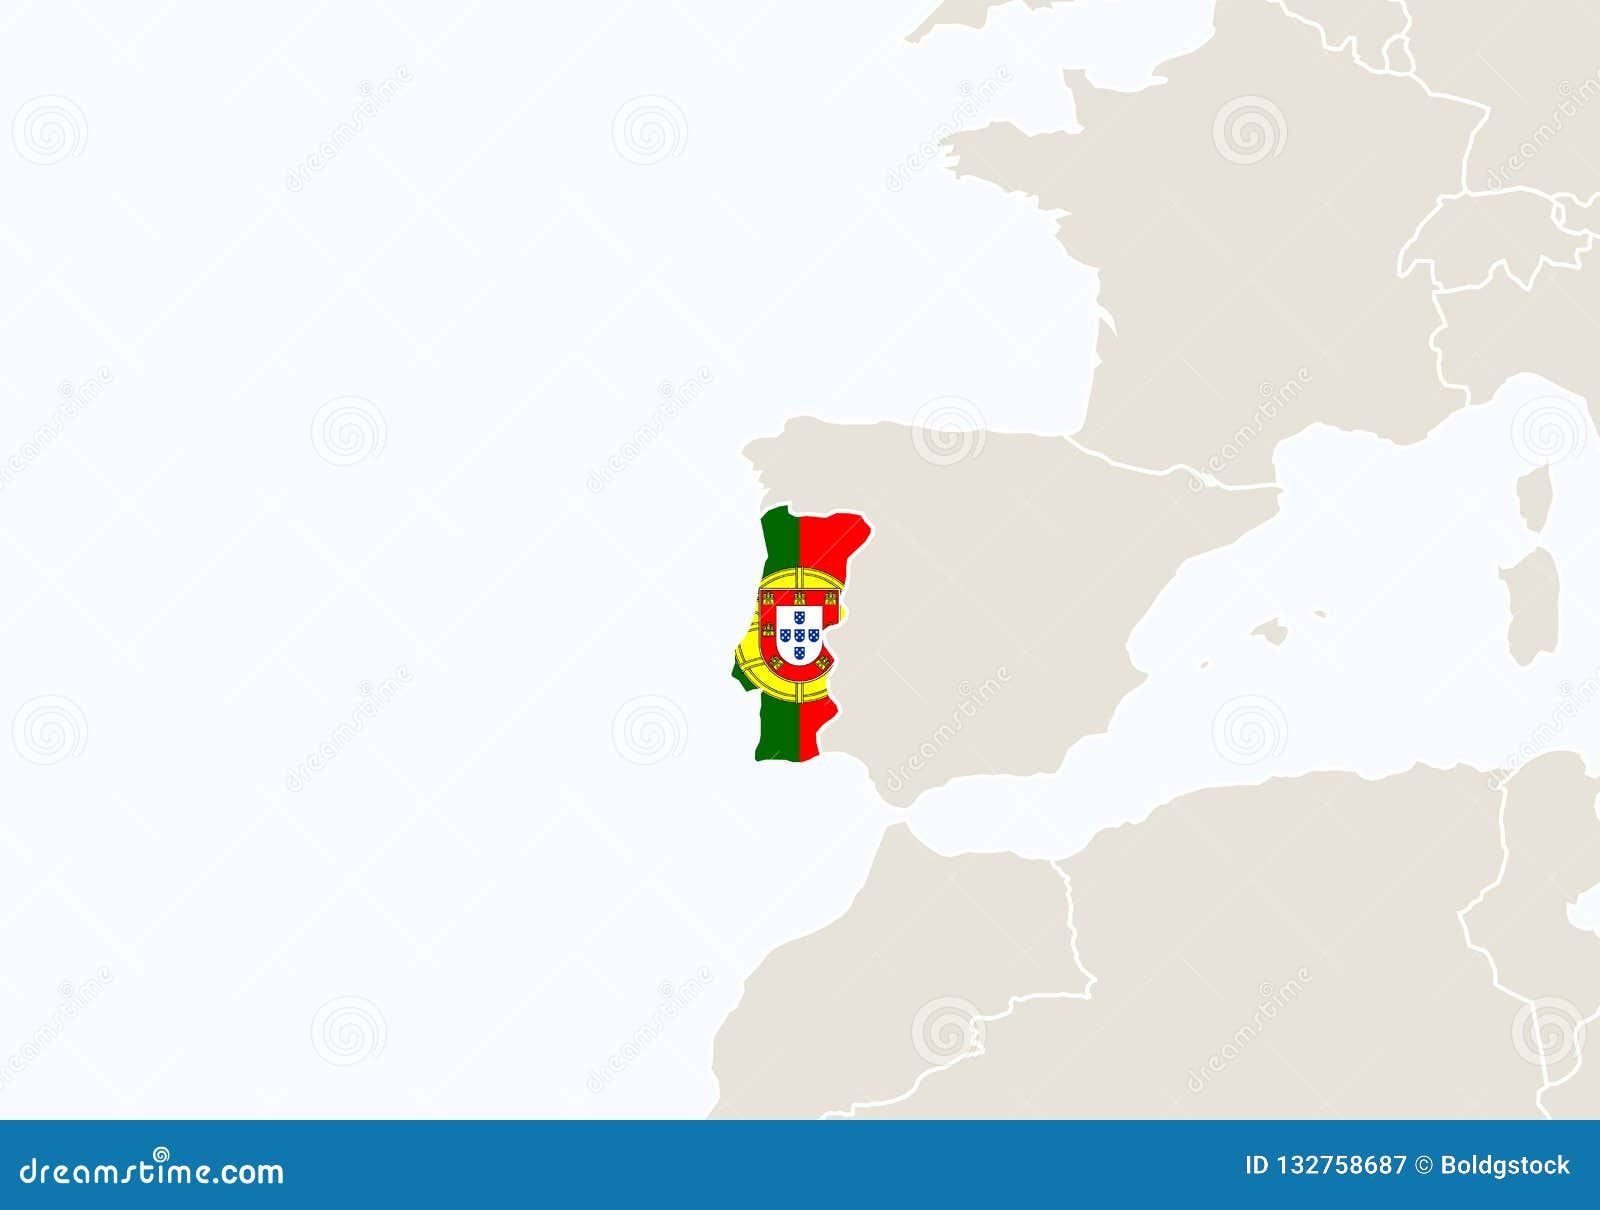 Mapa da europa com o mapa destacado de portugal